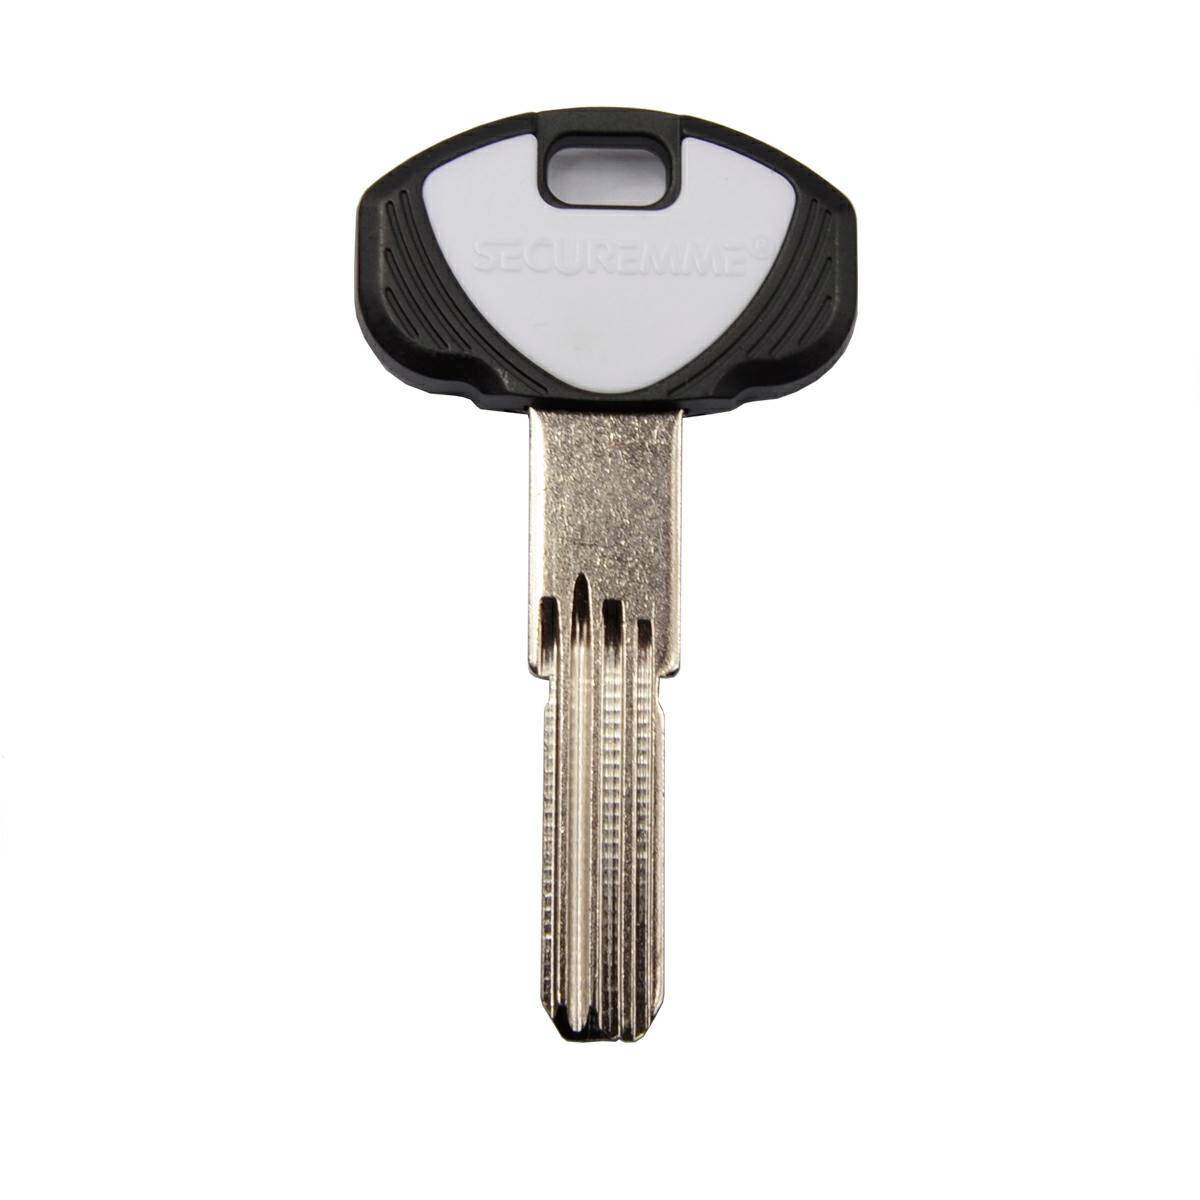 Schlüssel Securemme K2